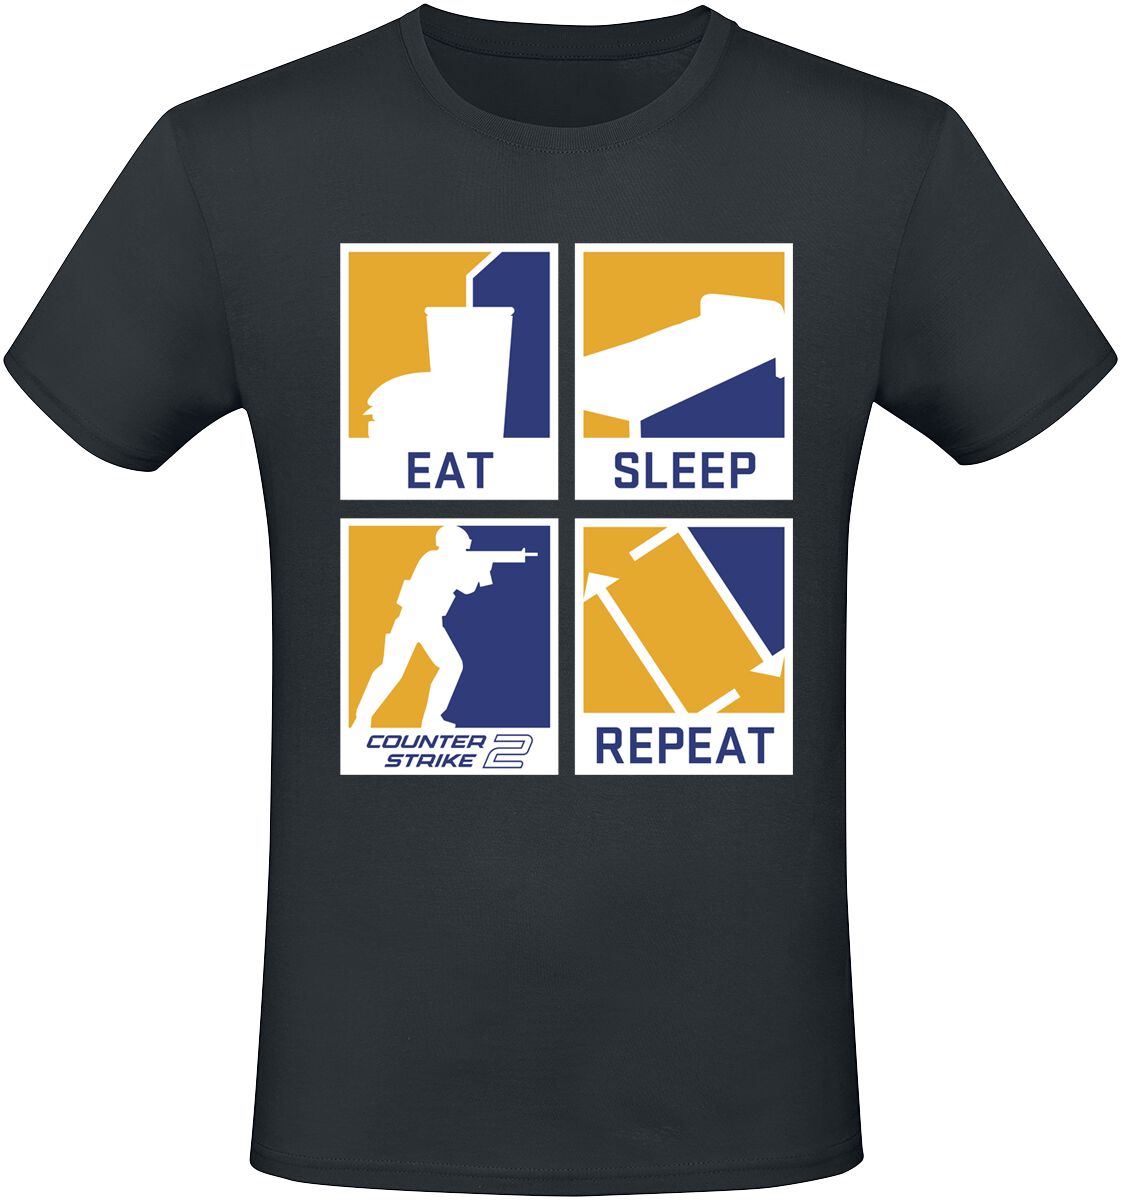 Counter-Strike - Gaming T-Shirt - 2 - Eat Sleep Repeat - S bis XXL - für Männer - Größe S - schwarz  - EMP exklusives Merchandise!